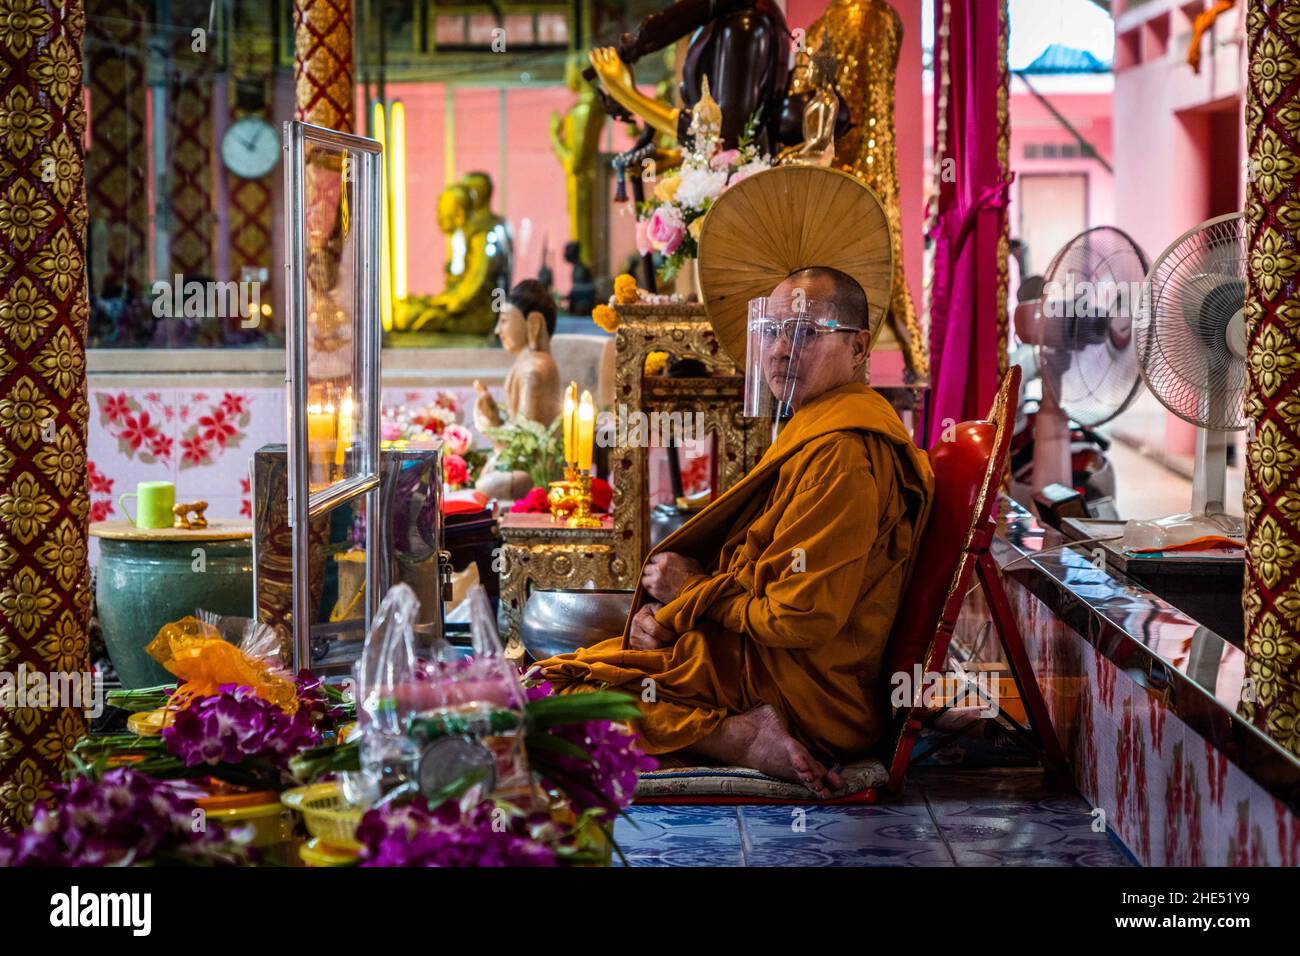 Bangkok, Thaïlande.1st janvier 2022.Le moine thaïlandais supervise les dévotés alors qu'ils prient avant de subir le rituel de résurrection au temple.les dévotés sont ressuscités dans un rituel annuel du nouvel an à Wat Takien près de Nonthaburi.Ce rite commence par une prière suivie par les participants qui chantent avec des fils saints enveloppés autour de leur tête avant de s'allonger dans un cercueil à « mort » et d'être nettoyés.(Image de crédit : © Matt Hunt/SOPA Images via ZUMA Press Wire) Banque D'Images